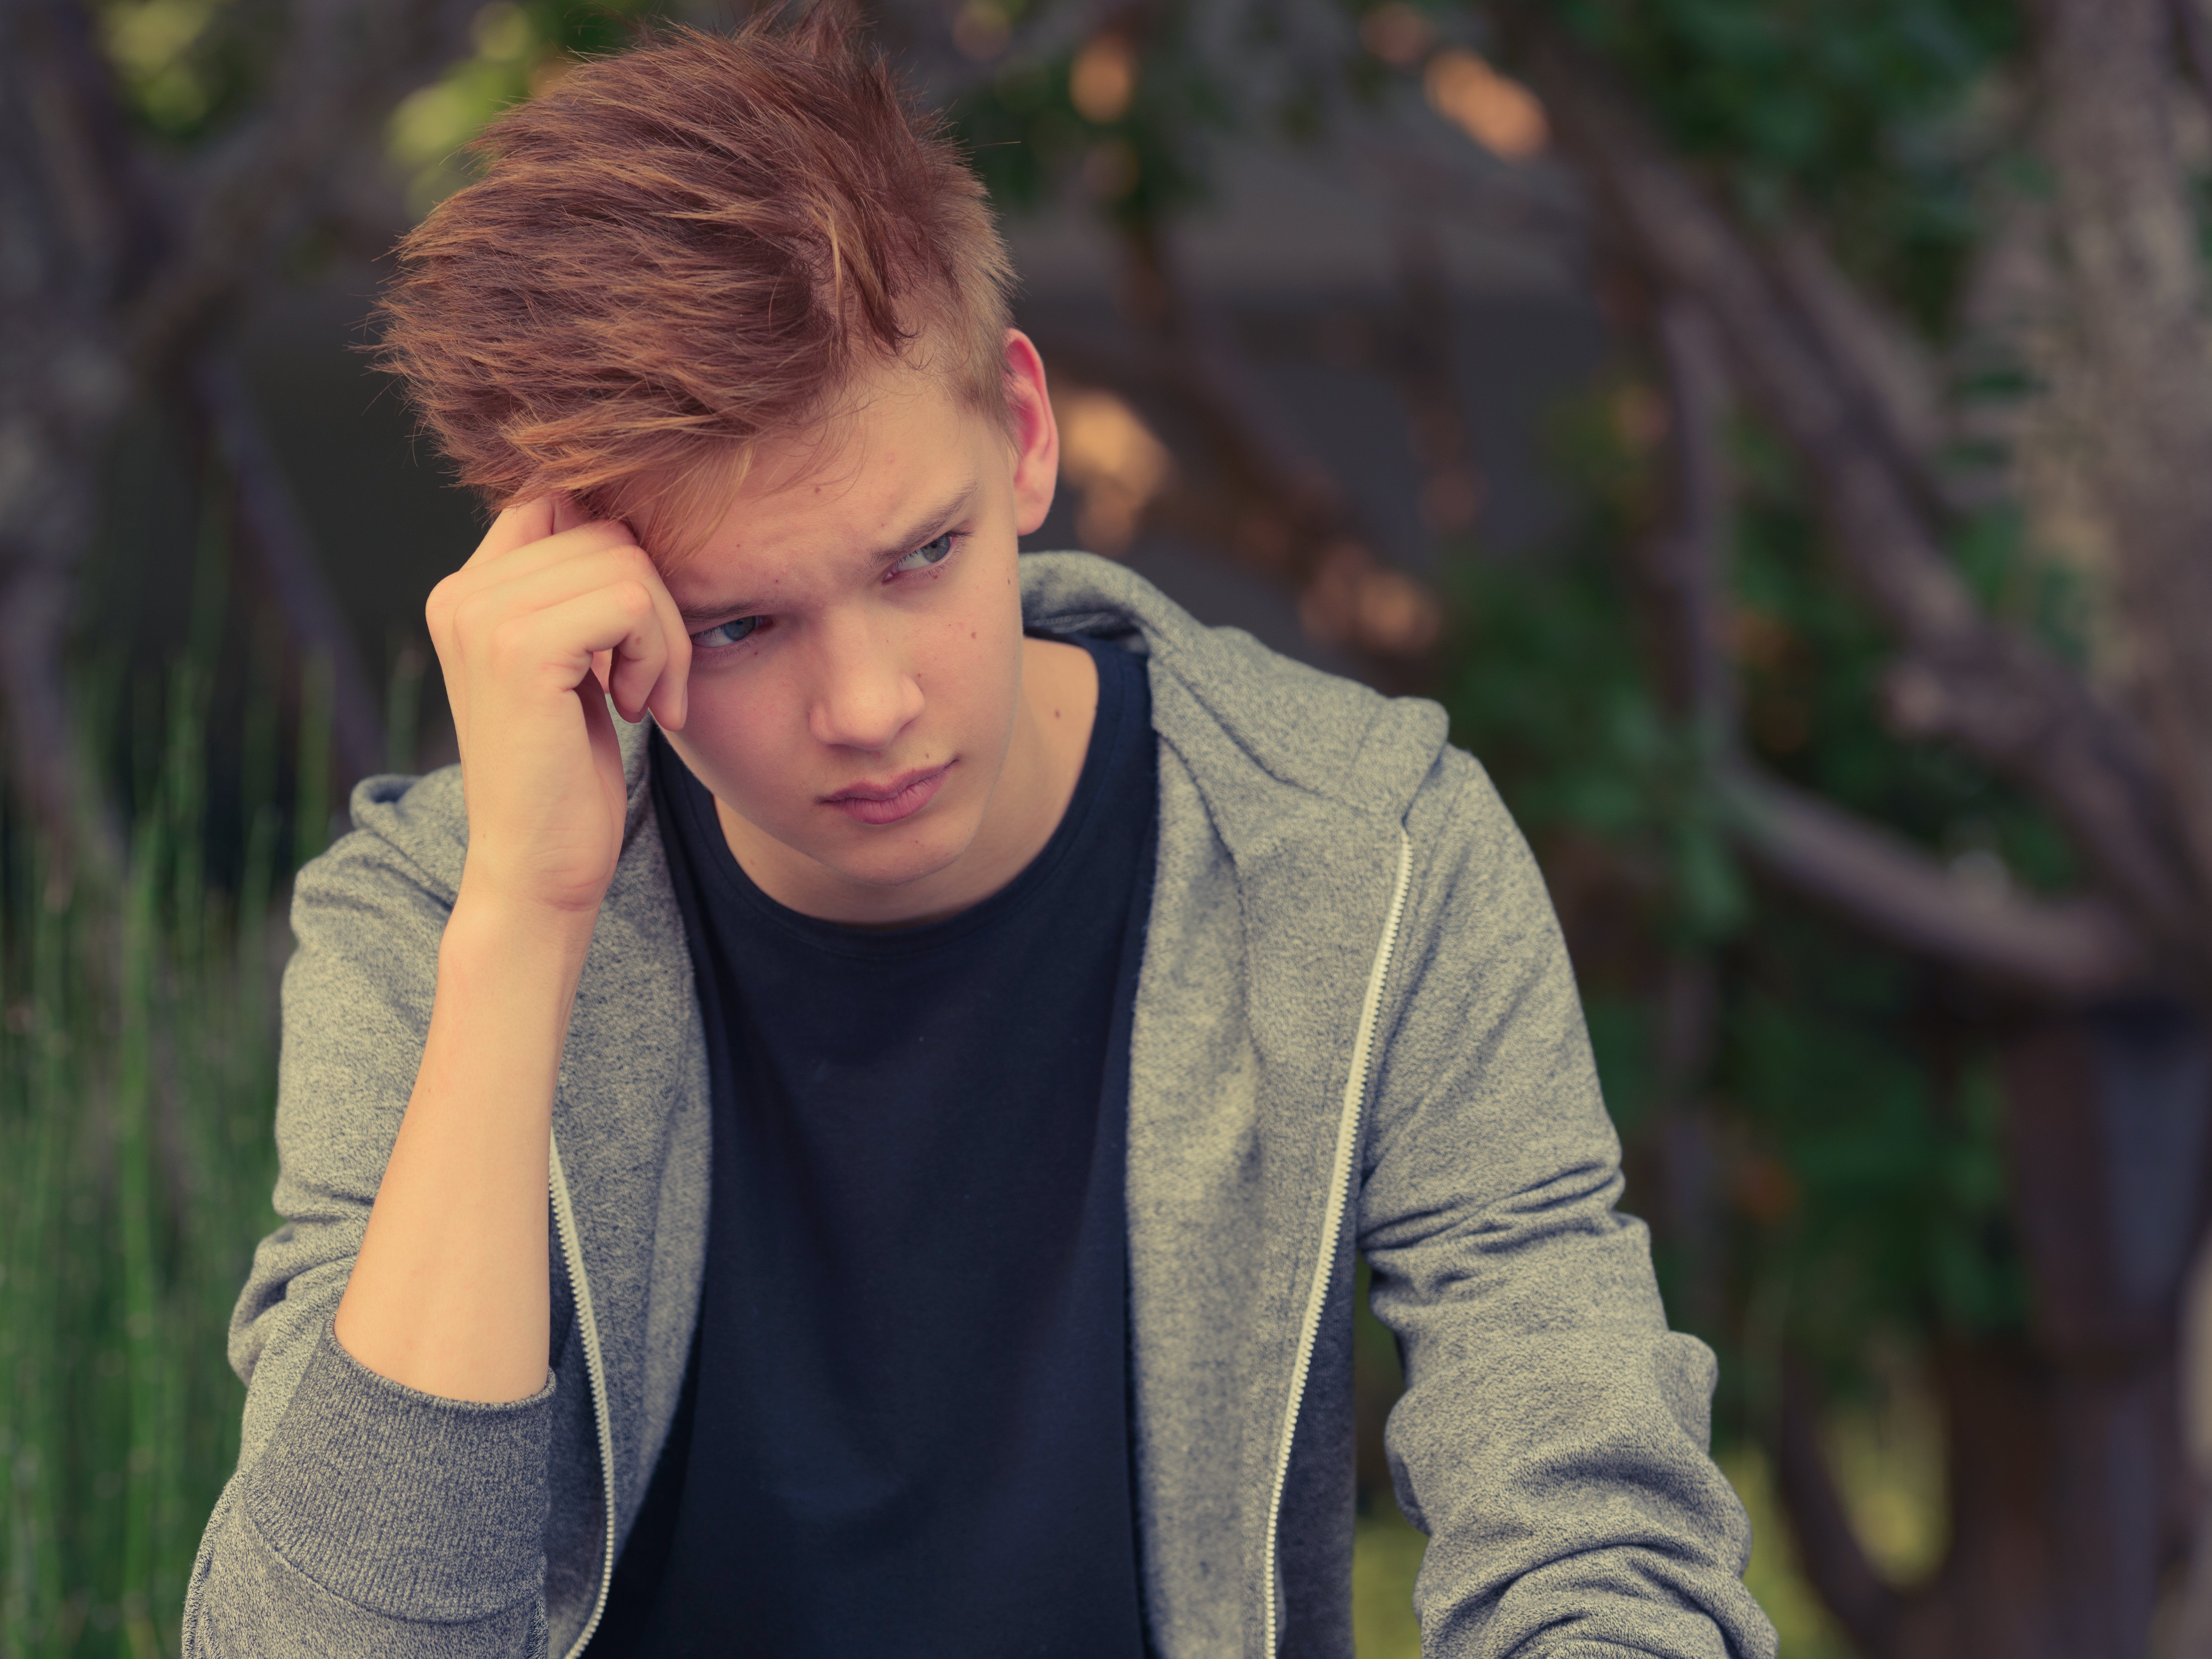 Un adolescent contrarié assis avec sa main contre sa tête | Source : Shutterstock